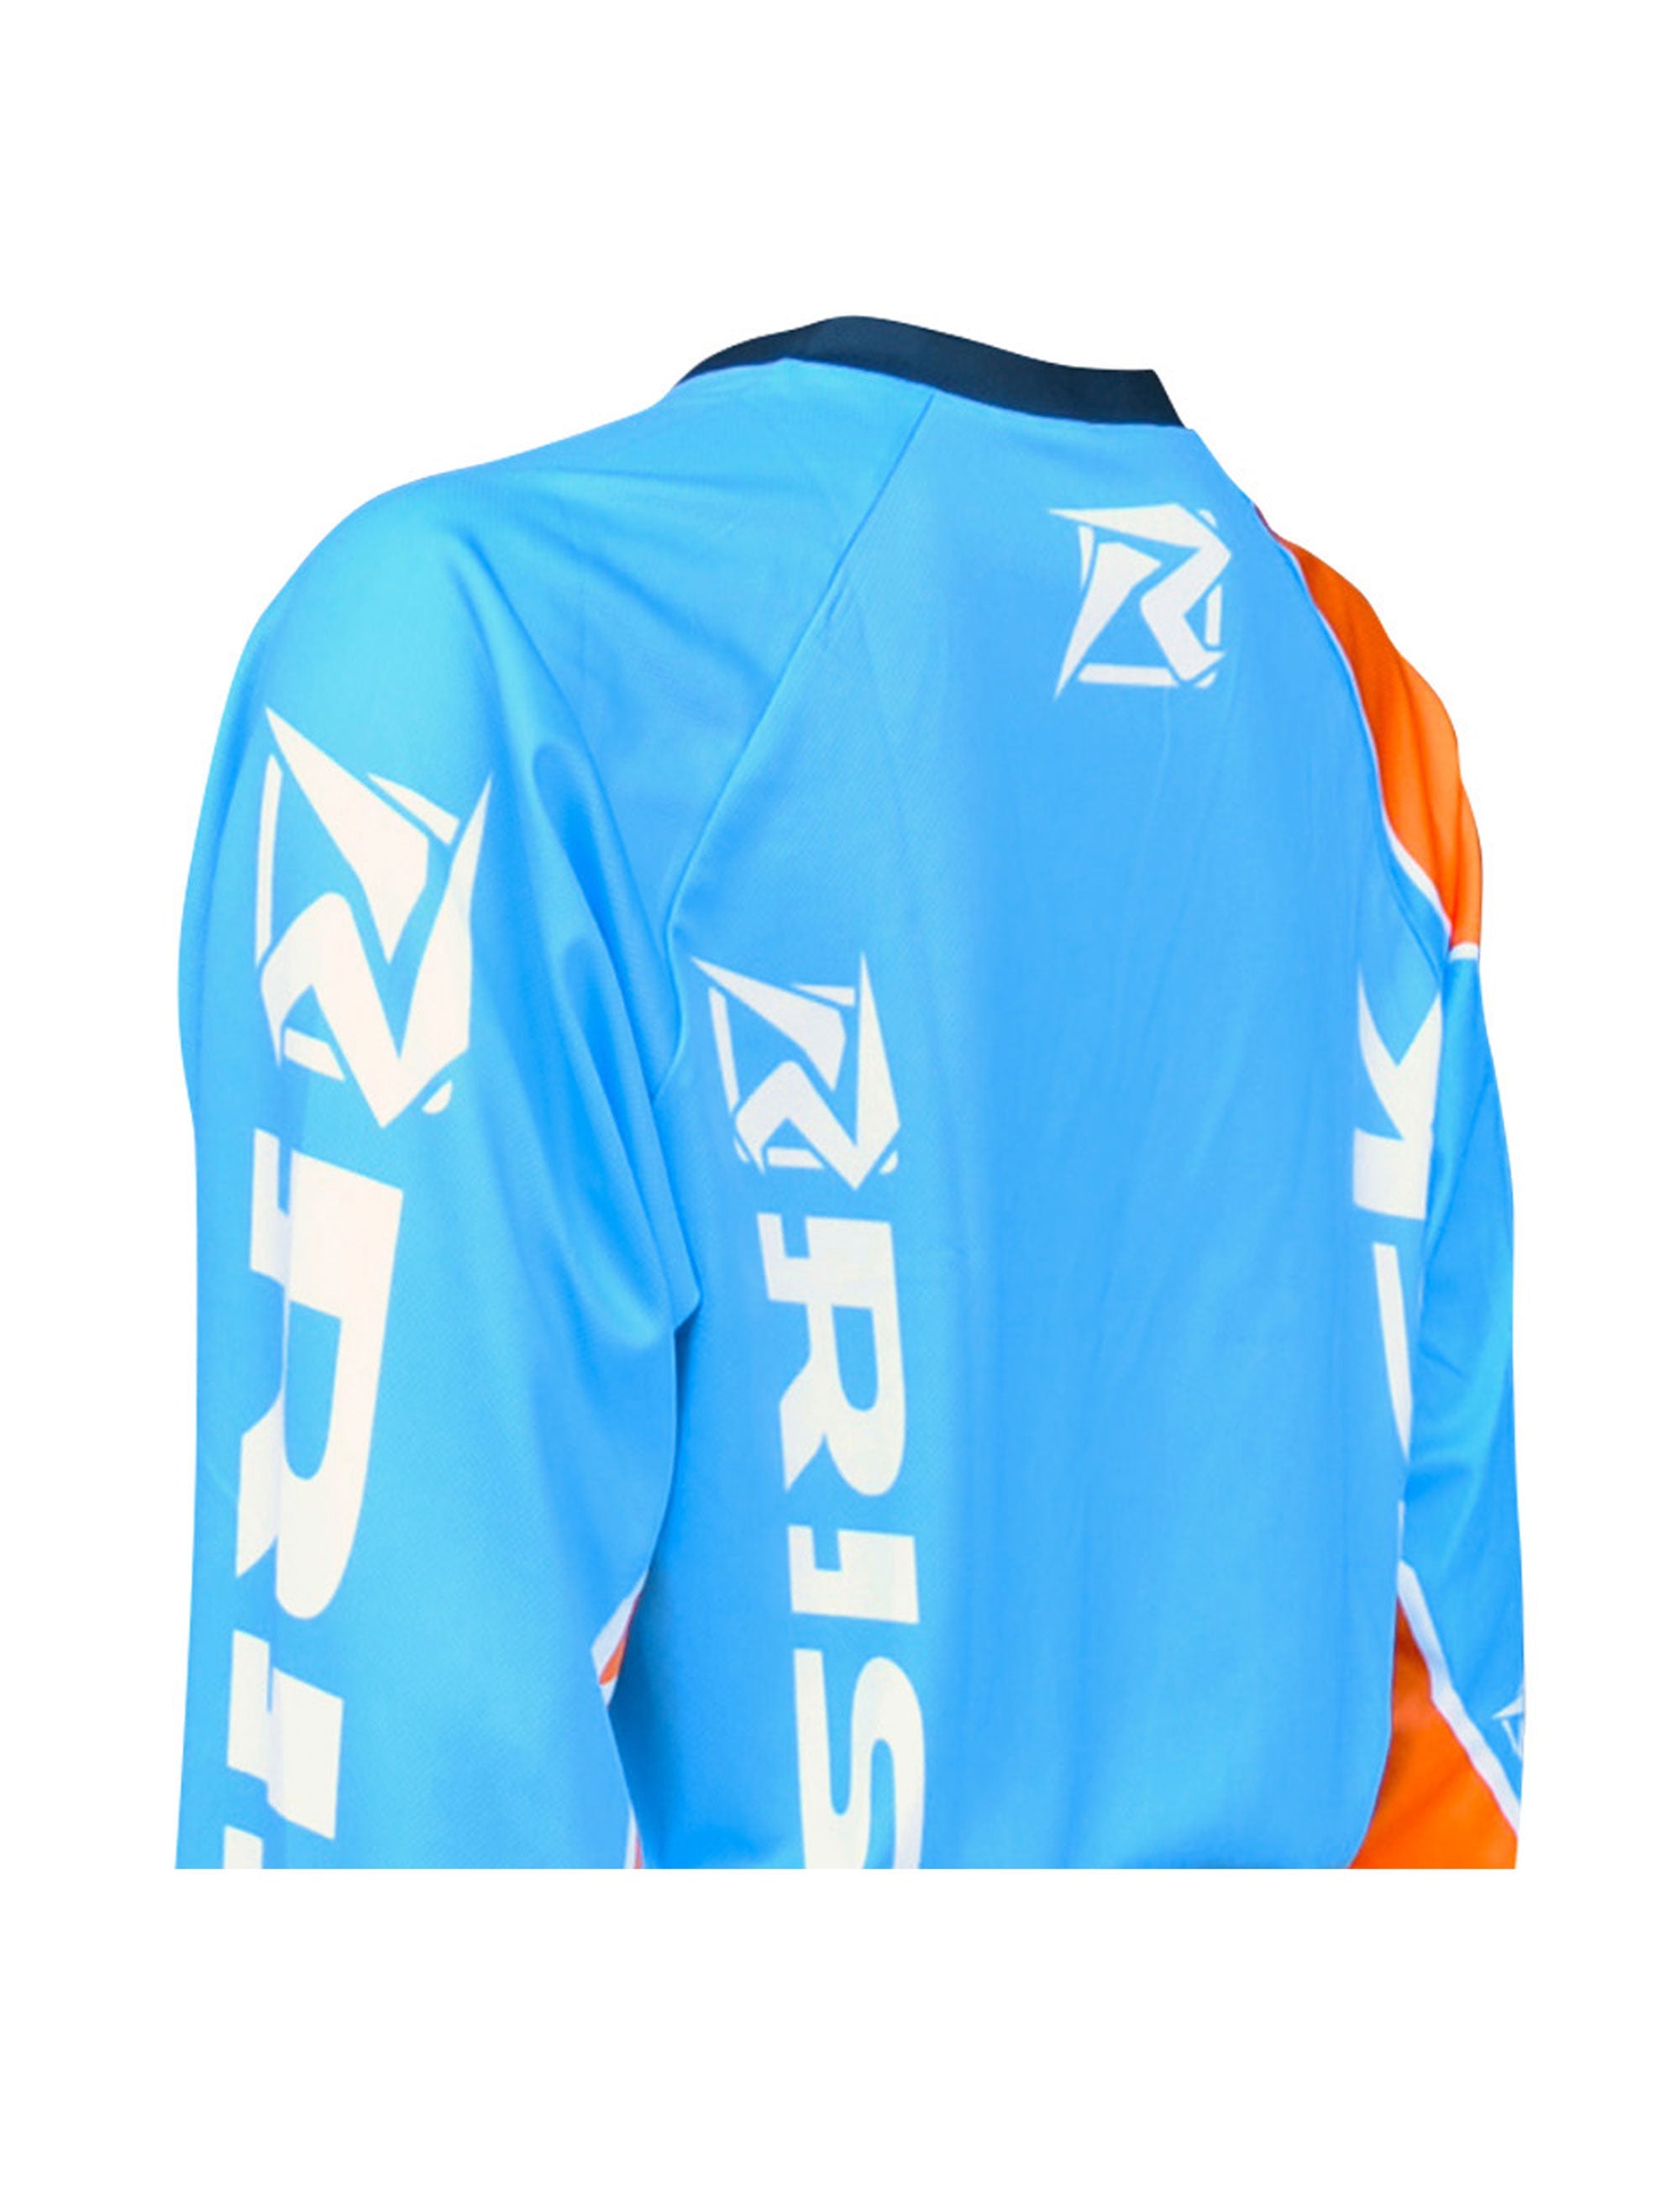 VENTilate Motocross Jersey - Blue/Orange